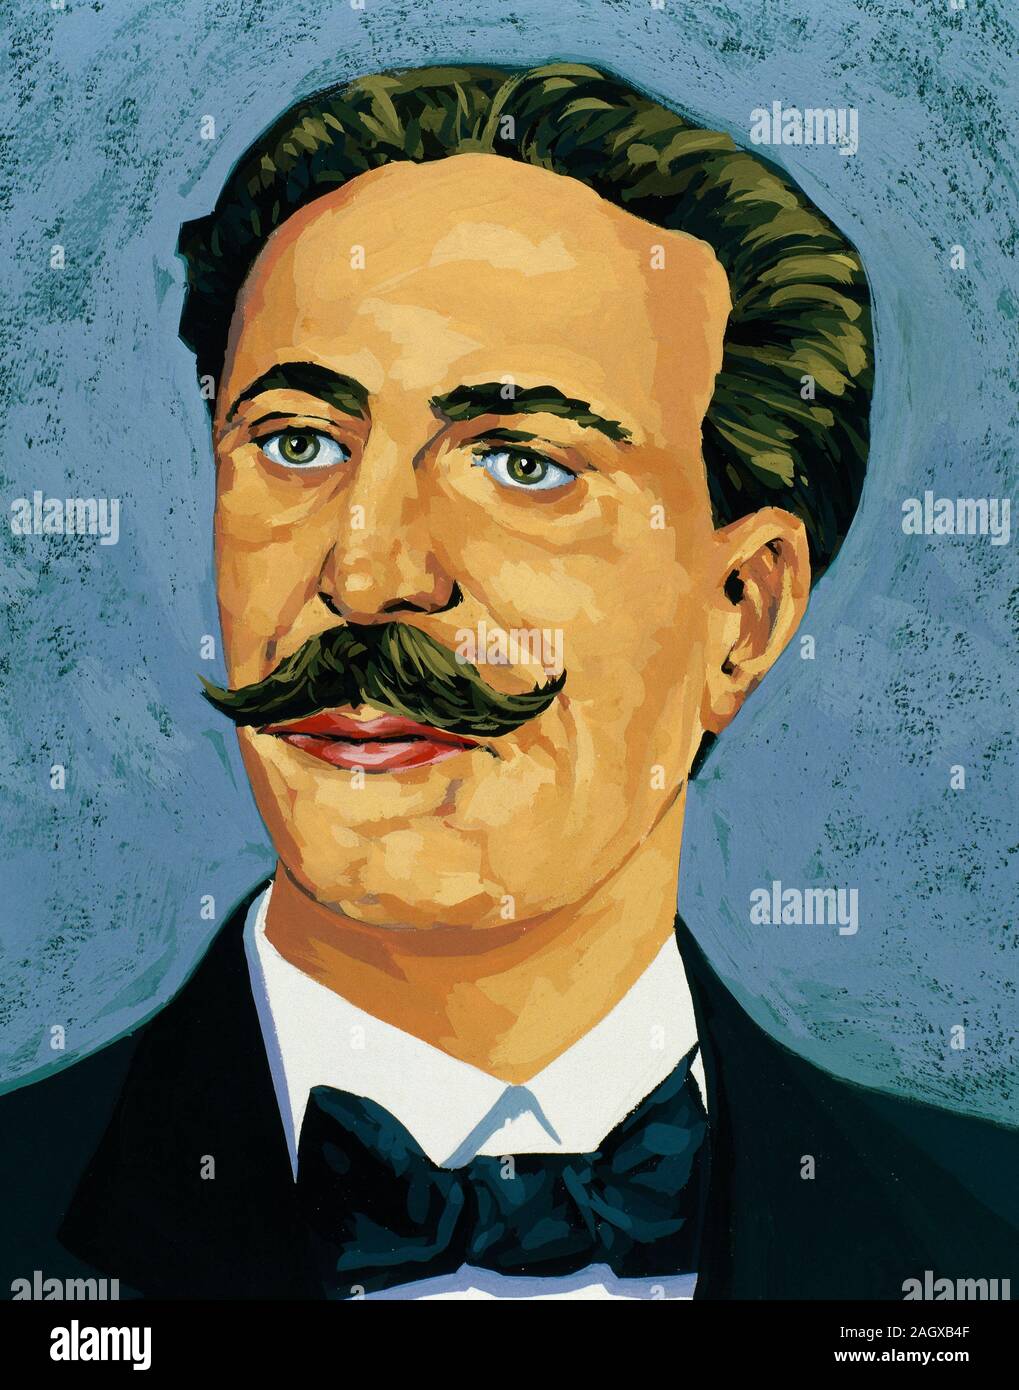 Eduardo Acevedo Diaz (1851-1921). Uruguayische Schriftsteller, Politiker und Journalist. Porträt. Zeichnung und Aquarell von der Spanischen illustrator Francisco Fonollosa (d. Ende 20. Jahrhundert). Stockfoto